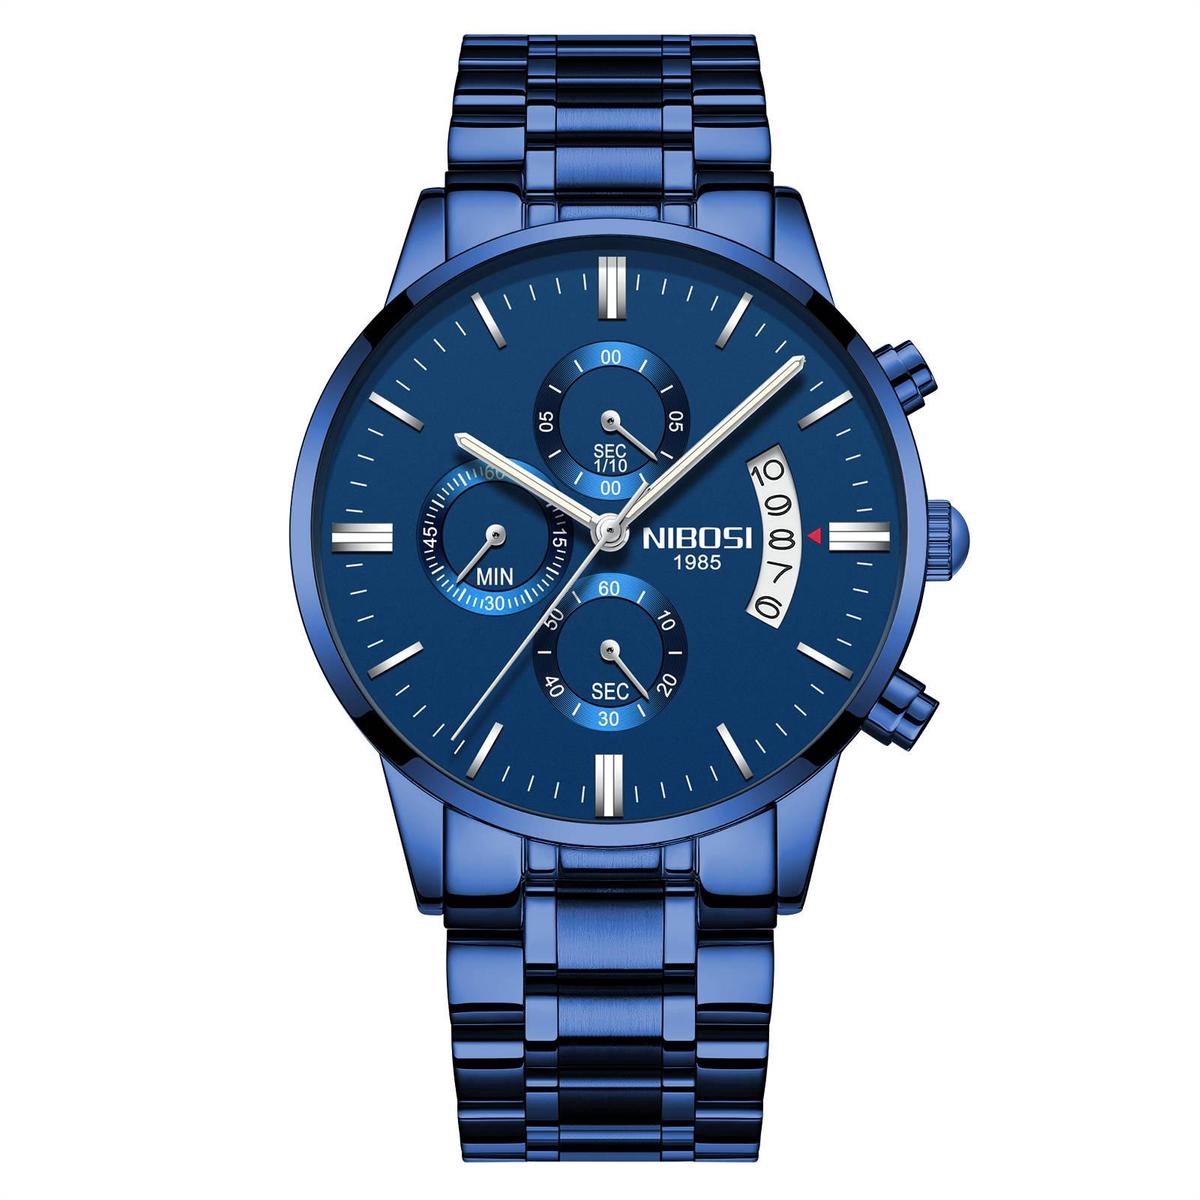 NIBOSI Horloges voor mannen - Horloge mannen - Luxe Blauw Design - Heren horloge - Ø 42 mm - Blauw - Roestvrij Staal - Waterdicht tot 3 bar - Chronograaf - Geschenkset met verstelbare pin